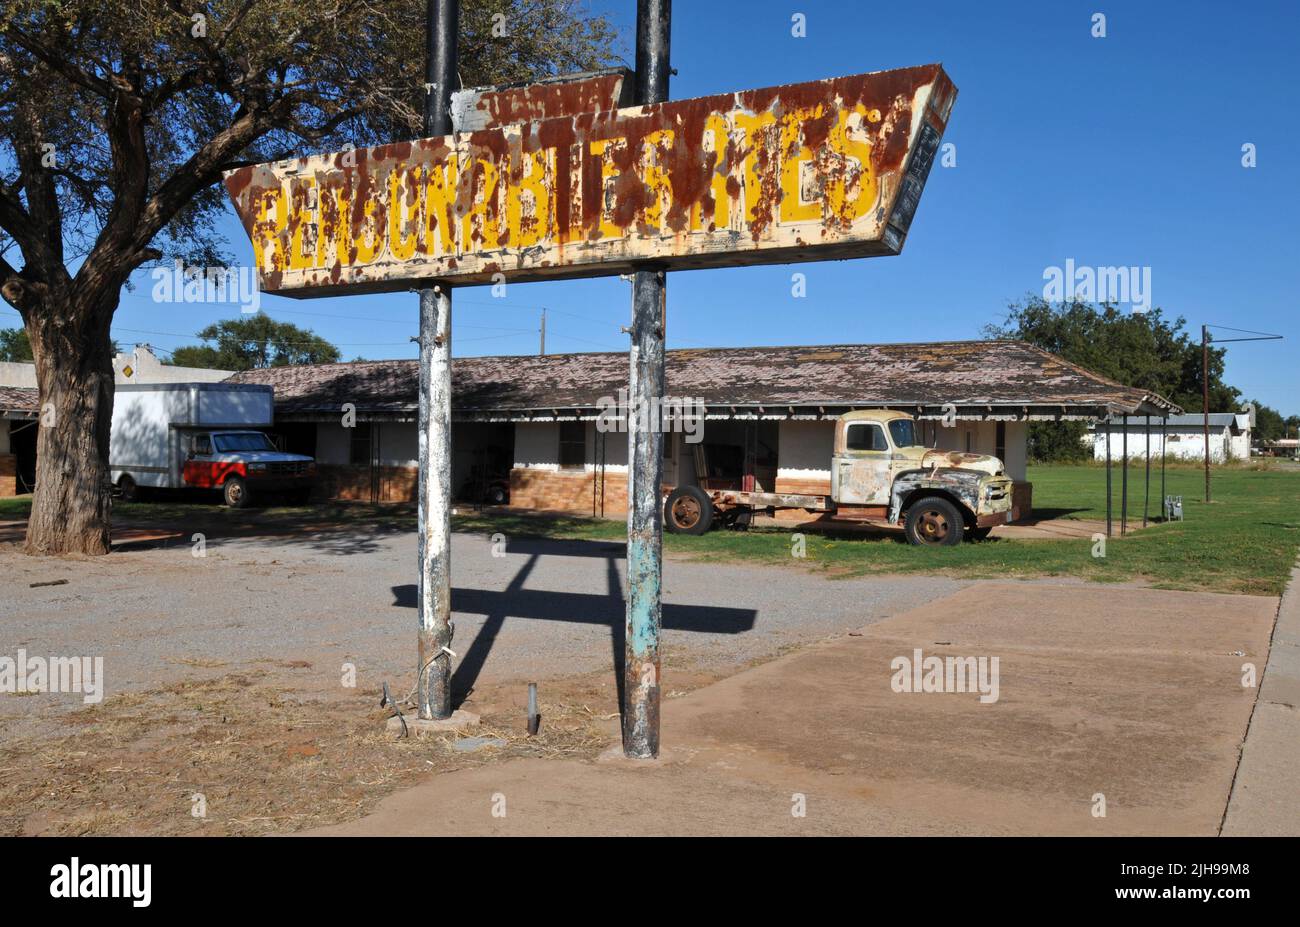 In der Nähe eines alten Lastwagens im ehemaligen Elm Motel in der kleinen Stadt Erick, Oklahoma, an der Route 66, steht ein rostiges Schild mit der Aufschrift „angemessene Preise“. Stockfoto